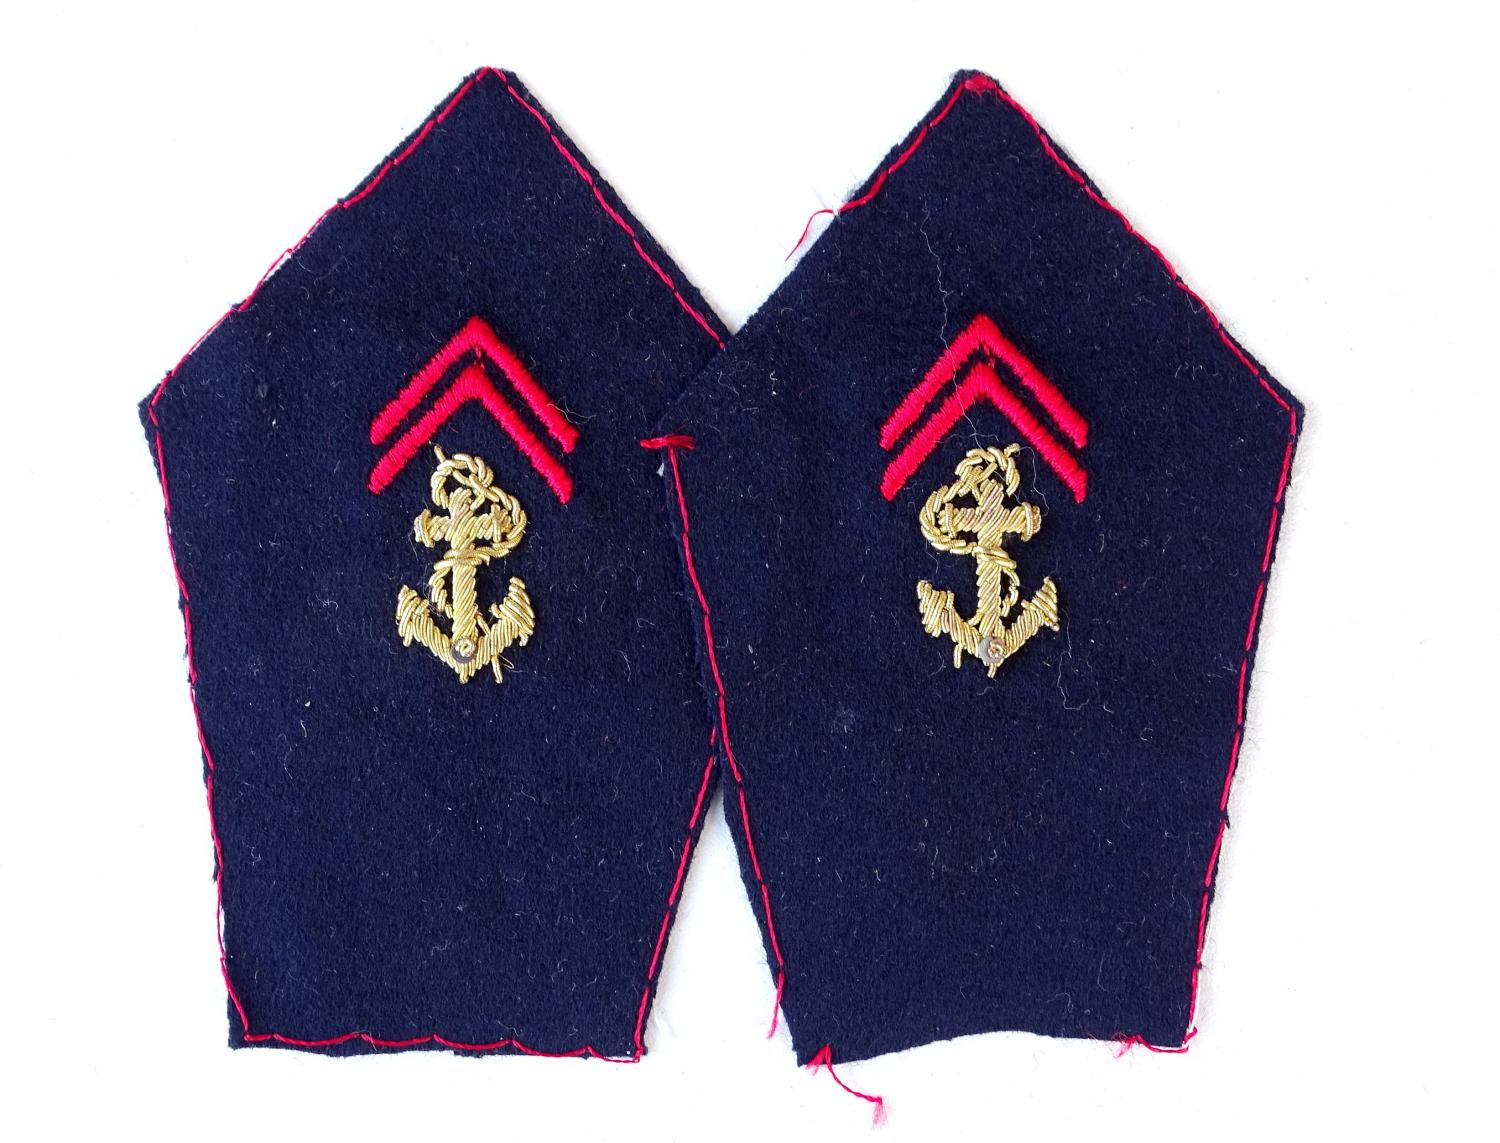 Paire de pattes de col officier Infanterie Coloniale / infanterie de marine . A former. Fond bleu marine.